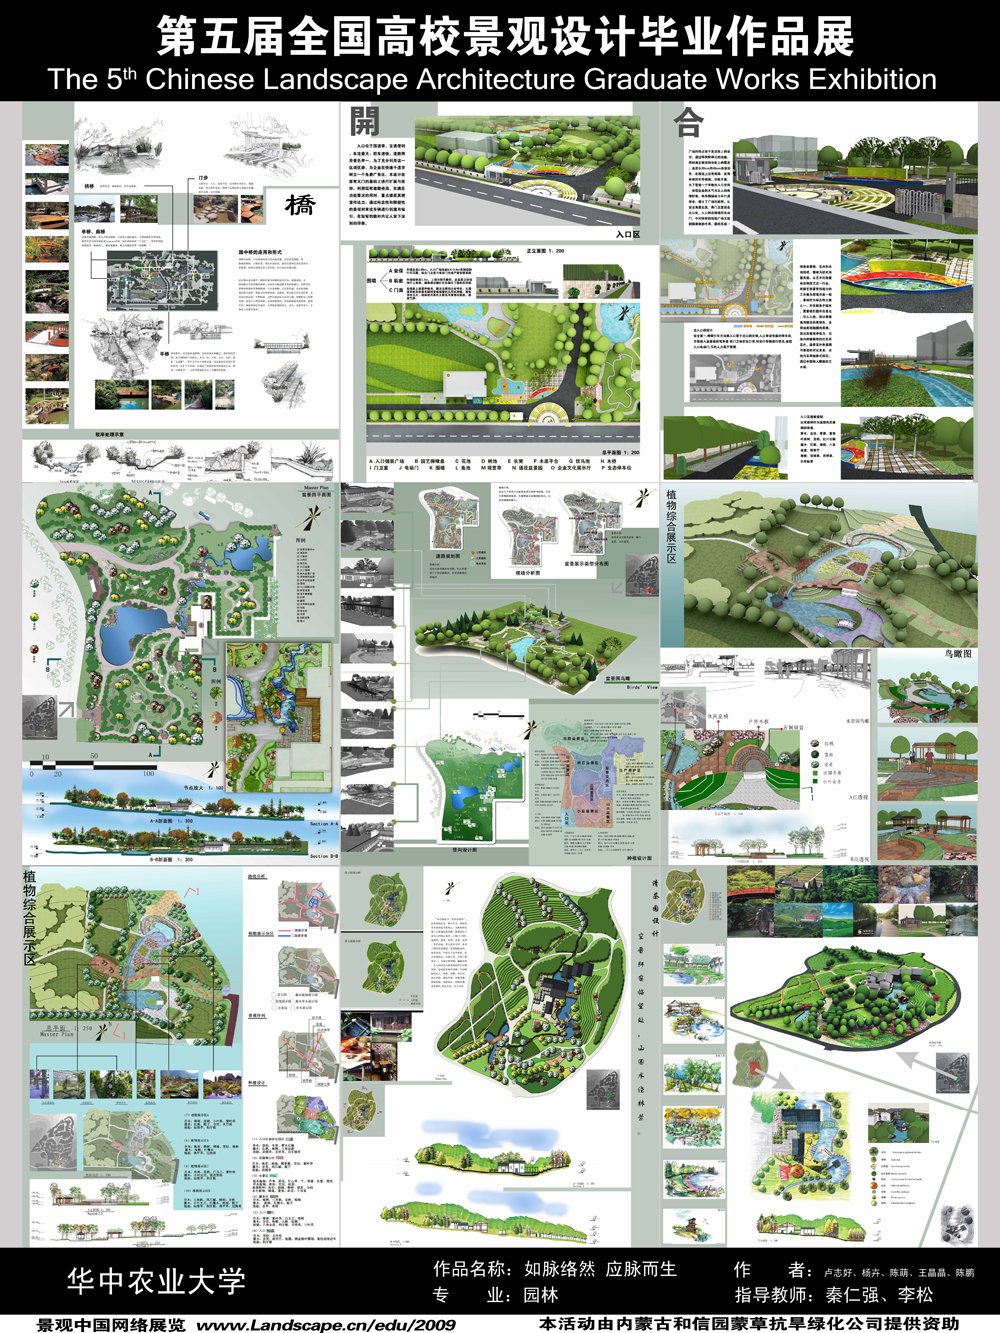 如脉络然·应脉而生 湖北钟祥紫园综合性园林展示园规划设计-2